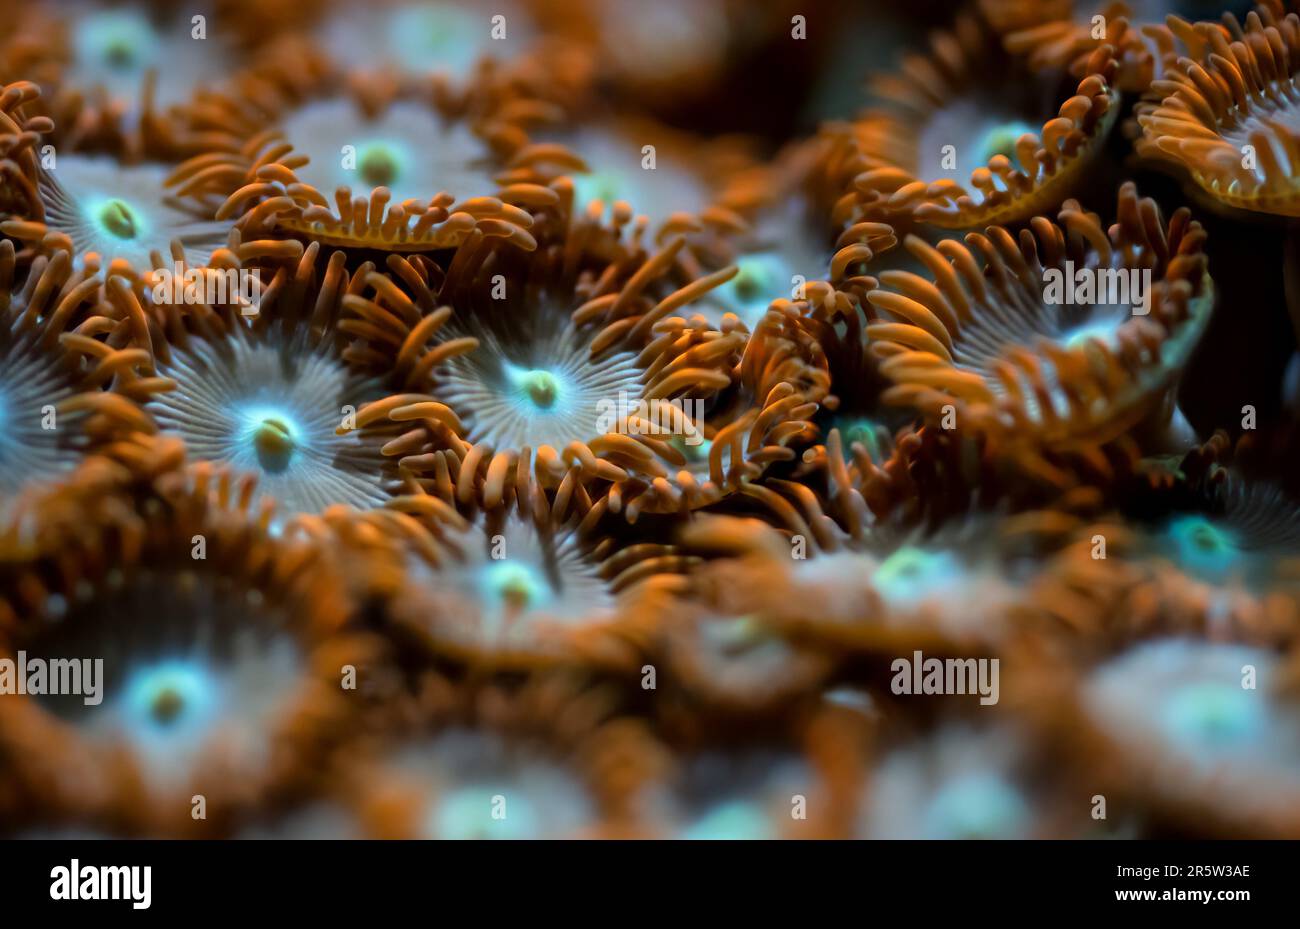 Photo sous-marine - fleur d'orange comme les coraux mous, espèces de Zoanthus, émettant de la lumière sous ampoule UV, arrière-plan marin abstrait, profondeur de champ peu profonde Banque D'Images